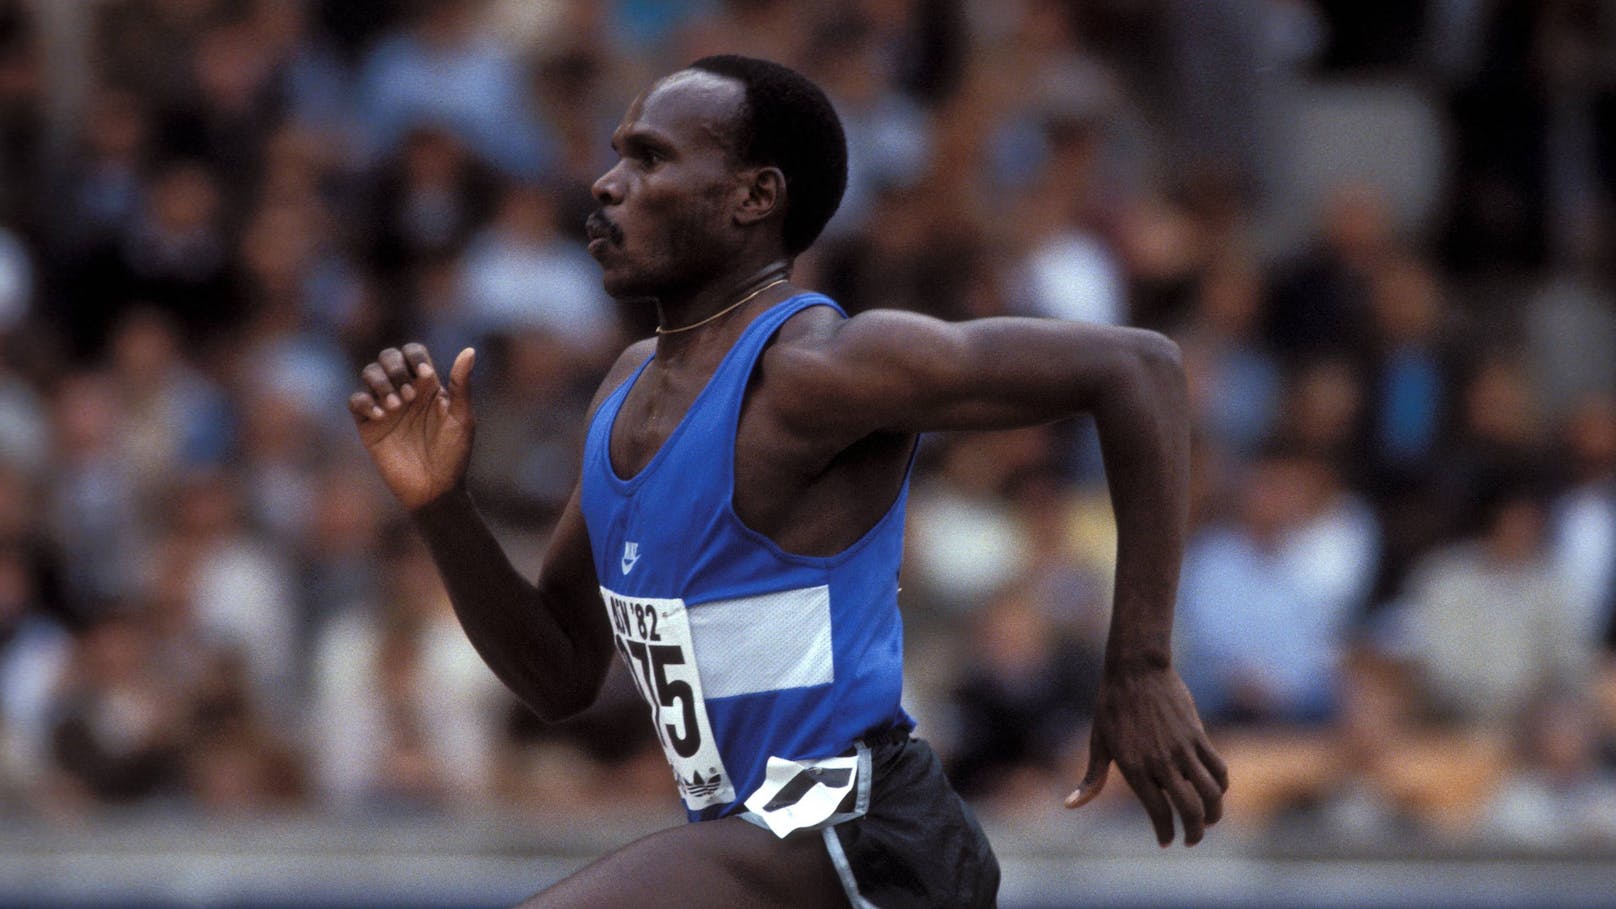 Vier Weltrekorde in 81 Tagen! Ausnahme-Athlet gestorben